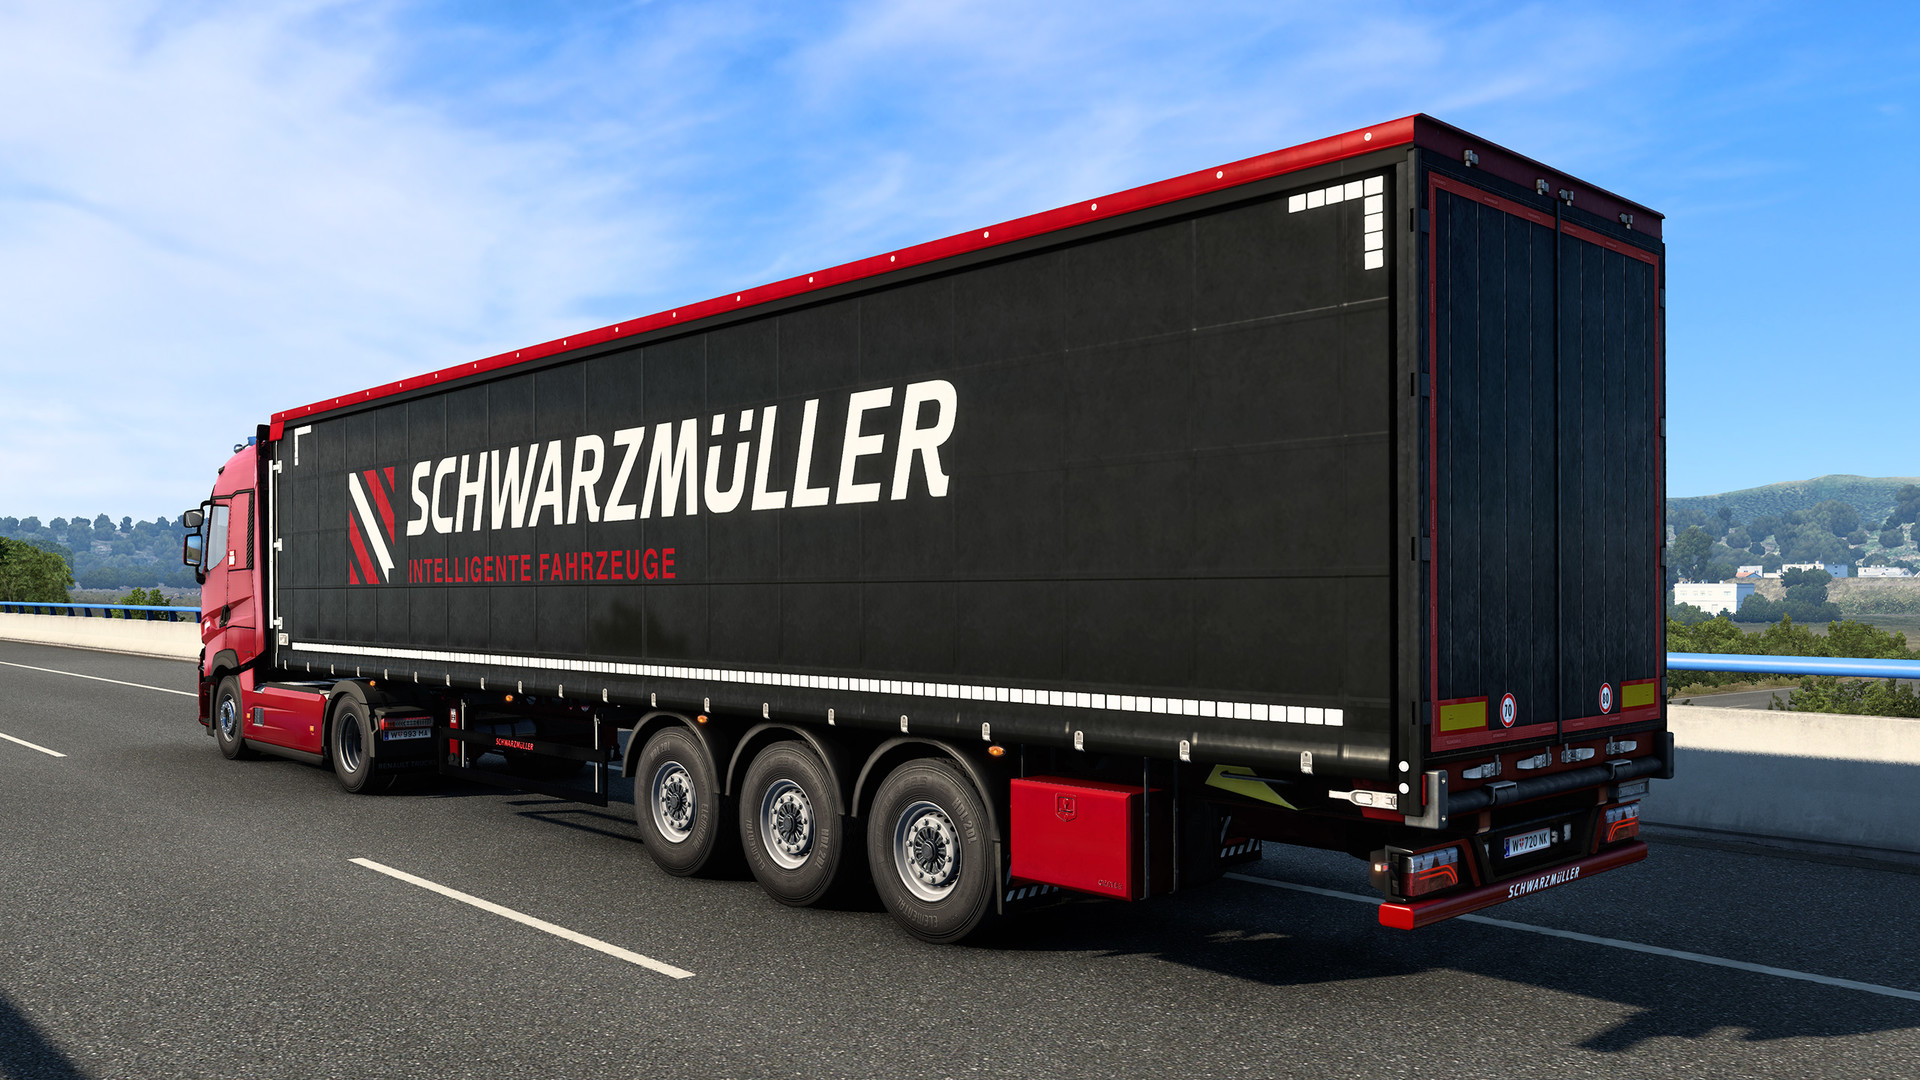 Euro Truck Simulator 2 - Schwarzmüller Trailer Pack Featured Screenshot #1